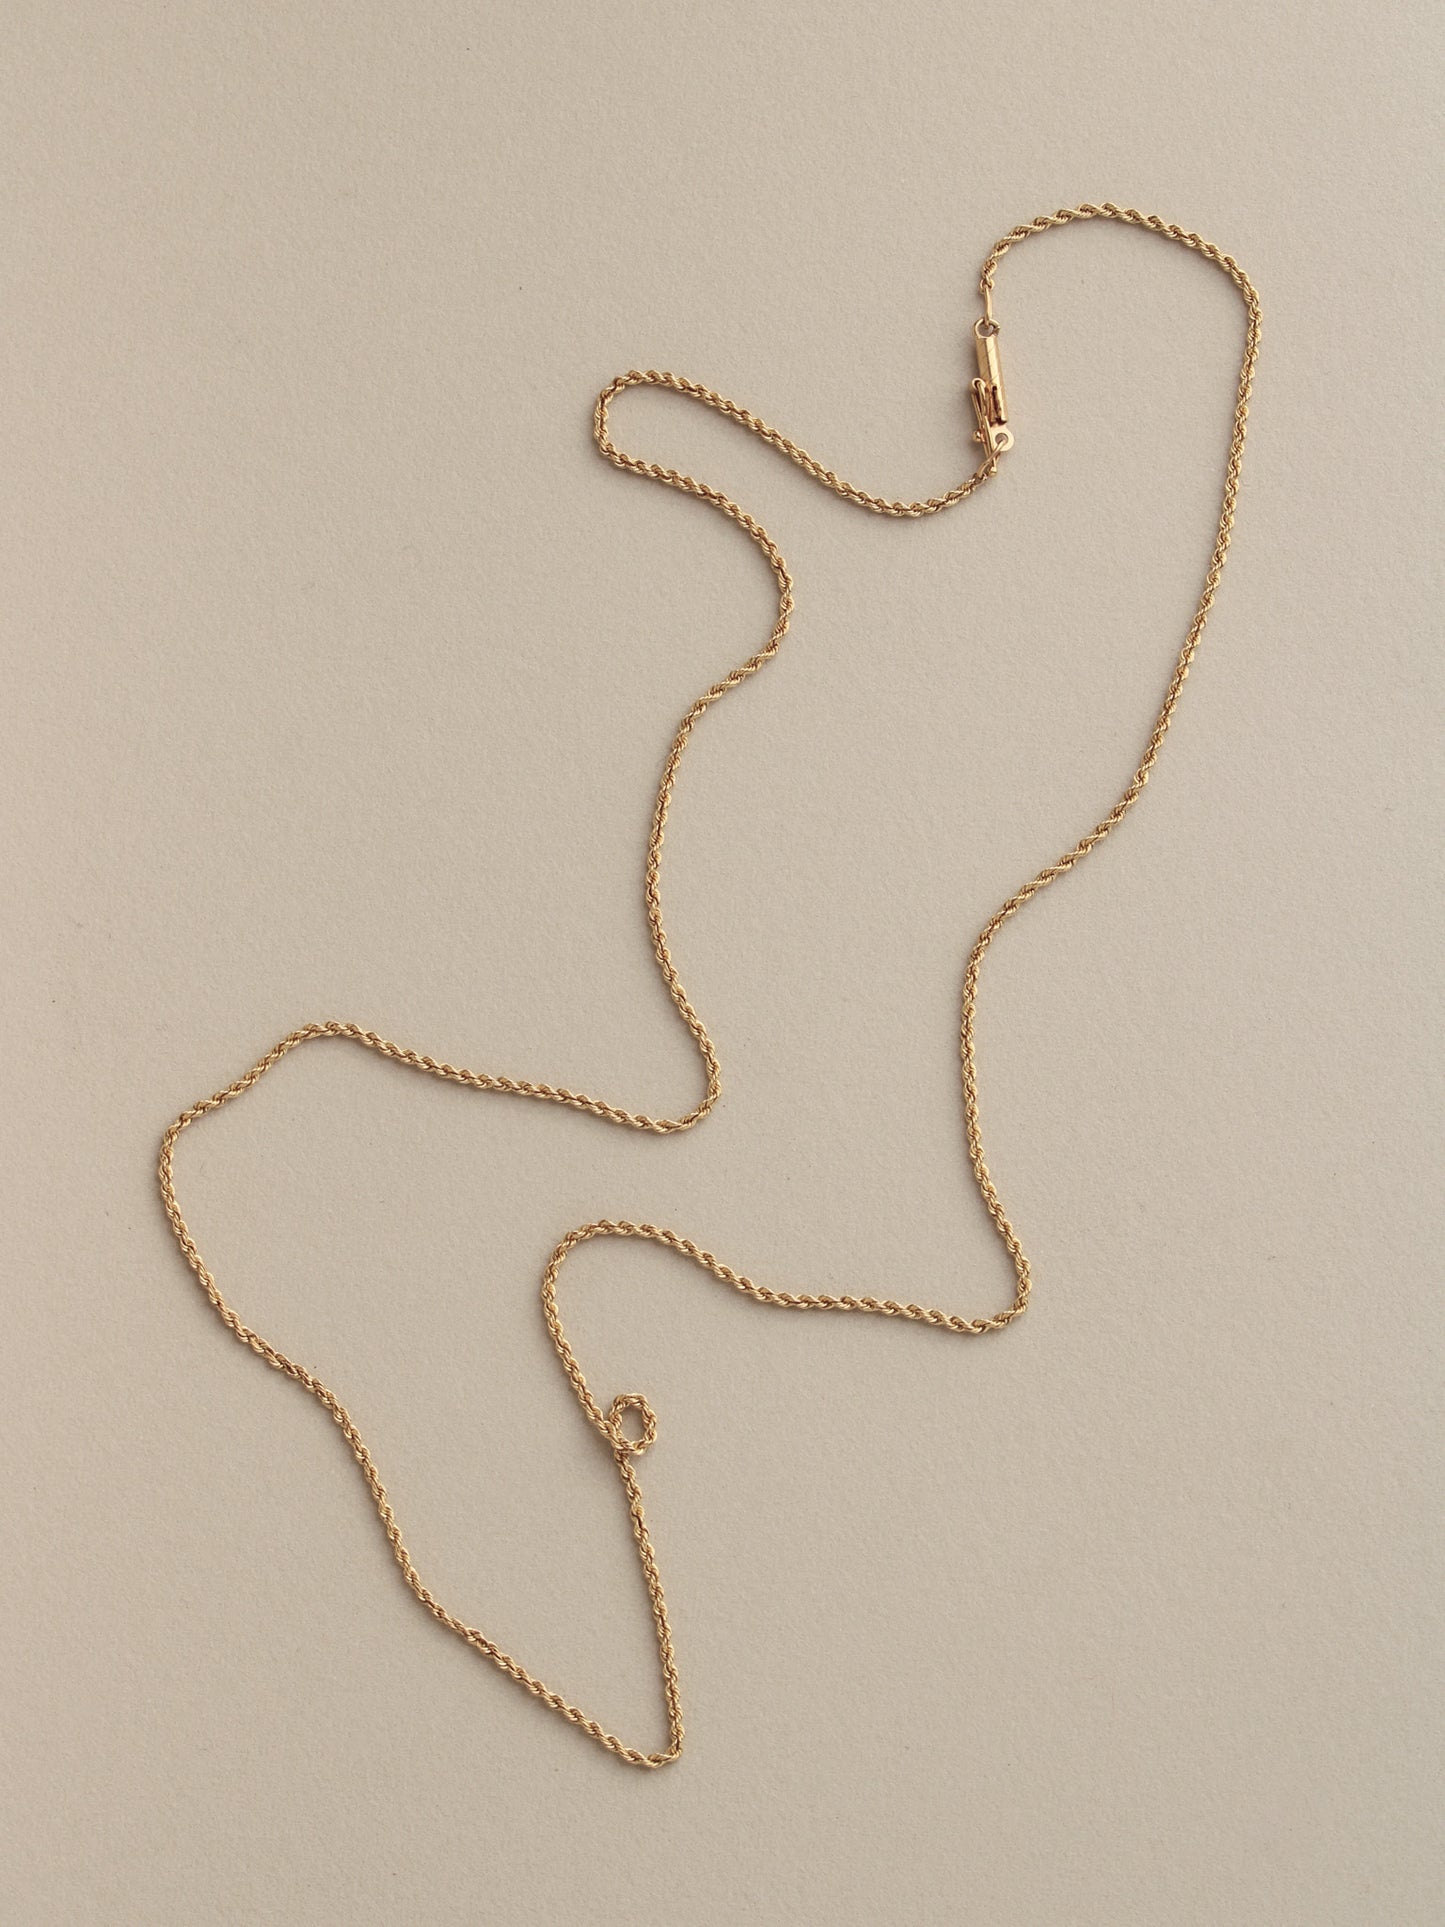 Rope Chain, 14k